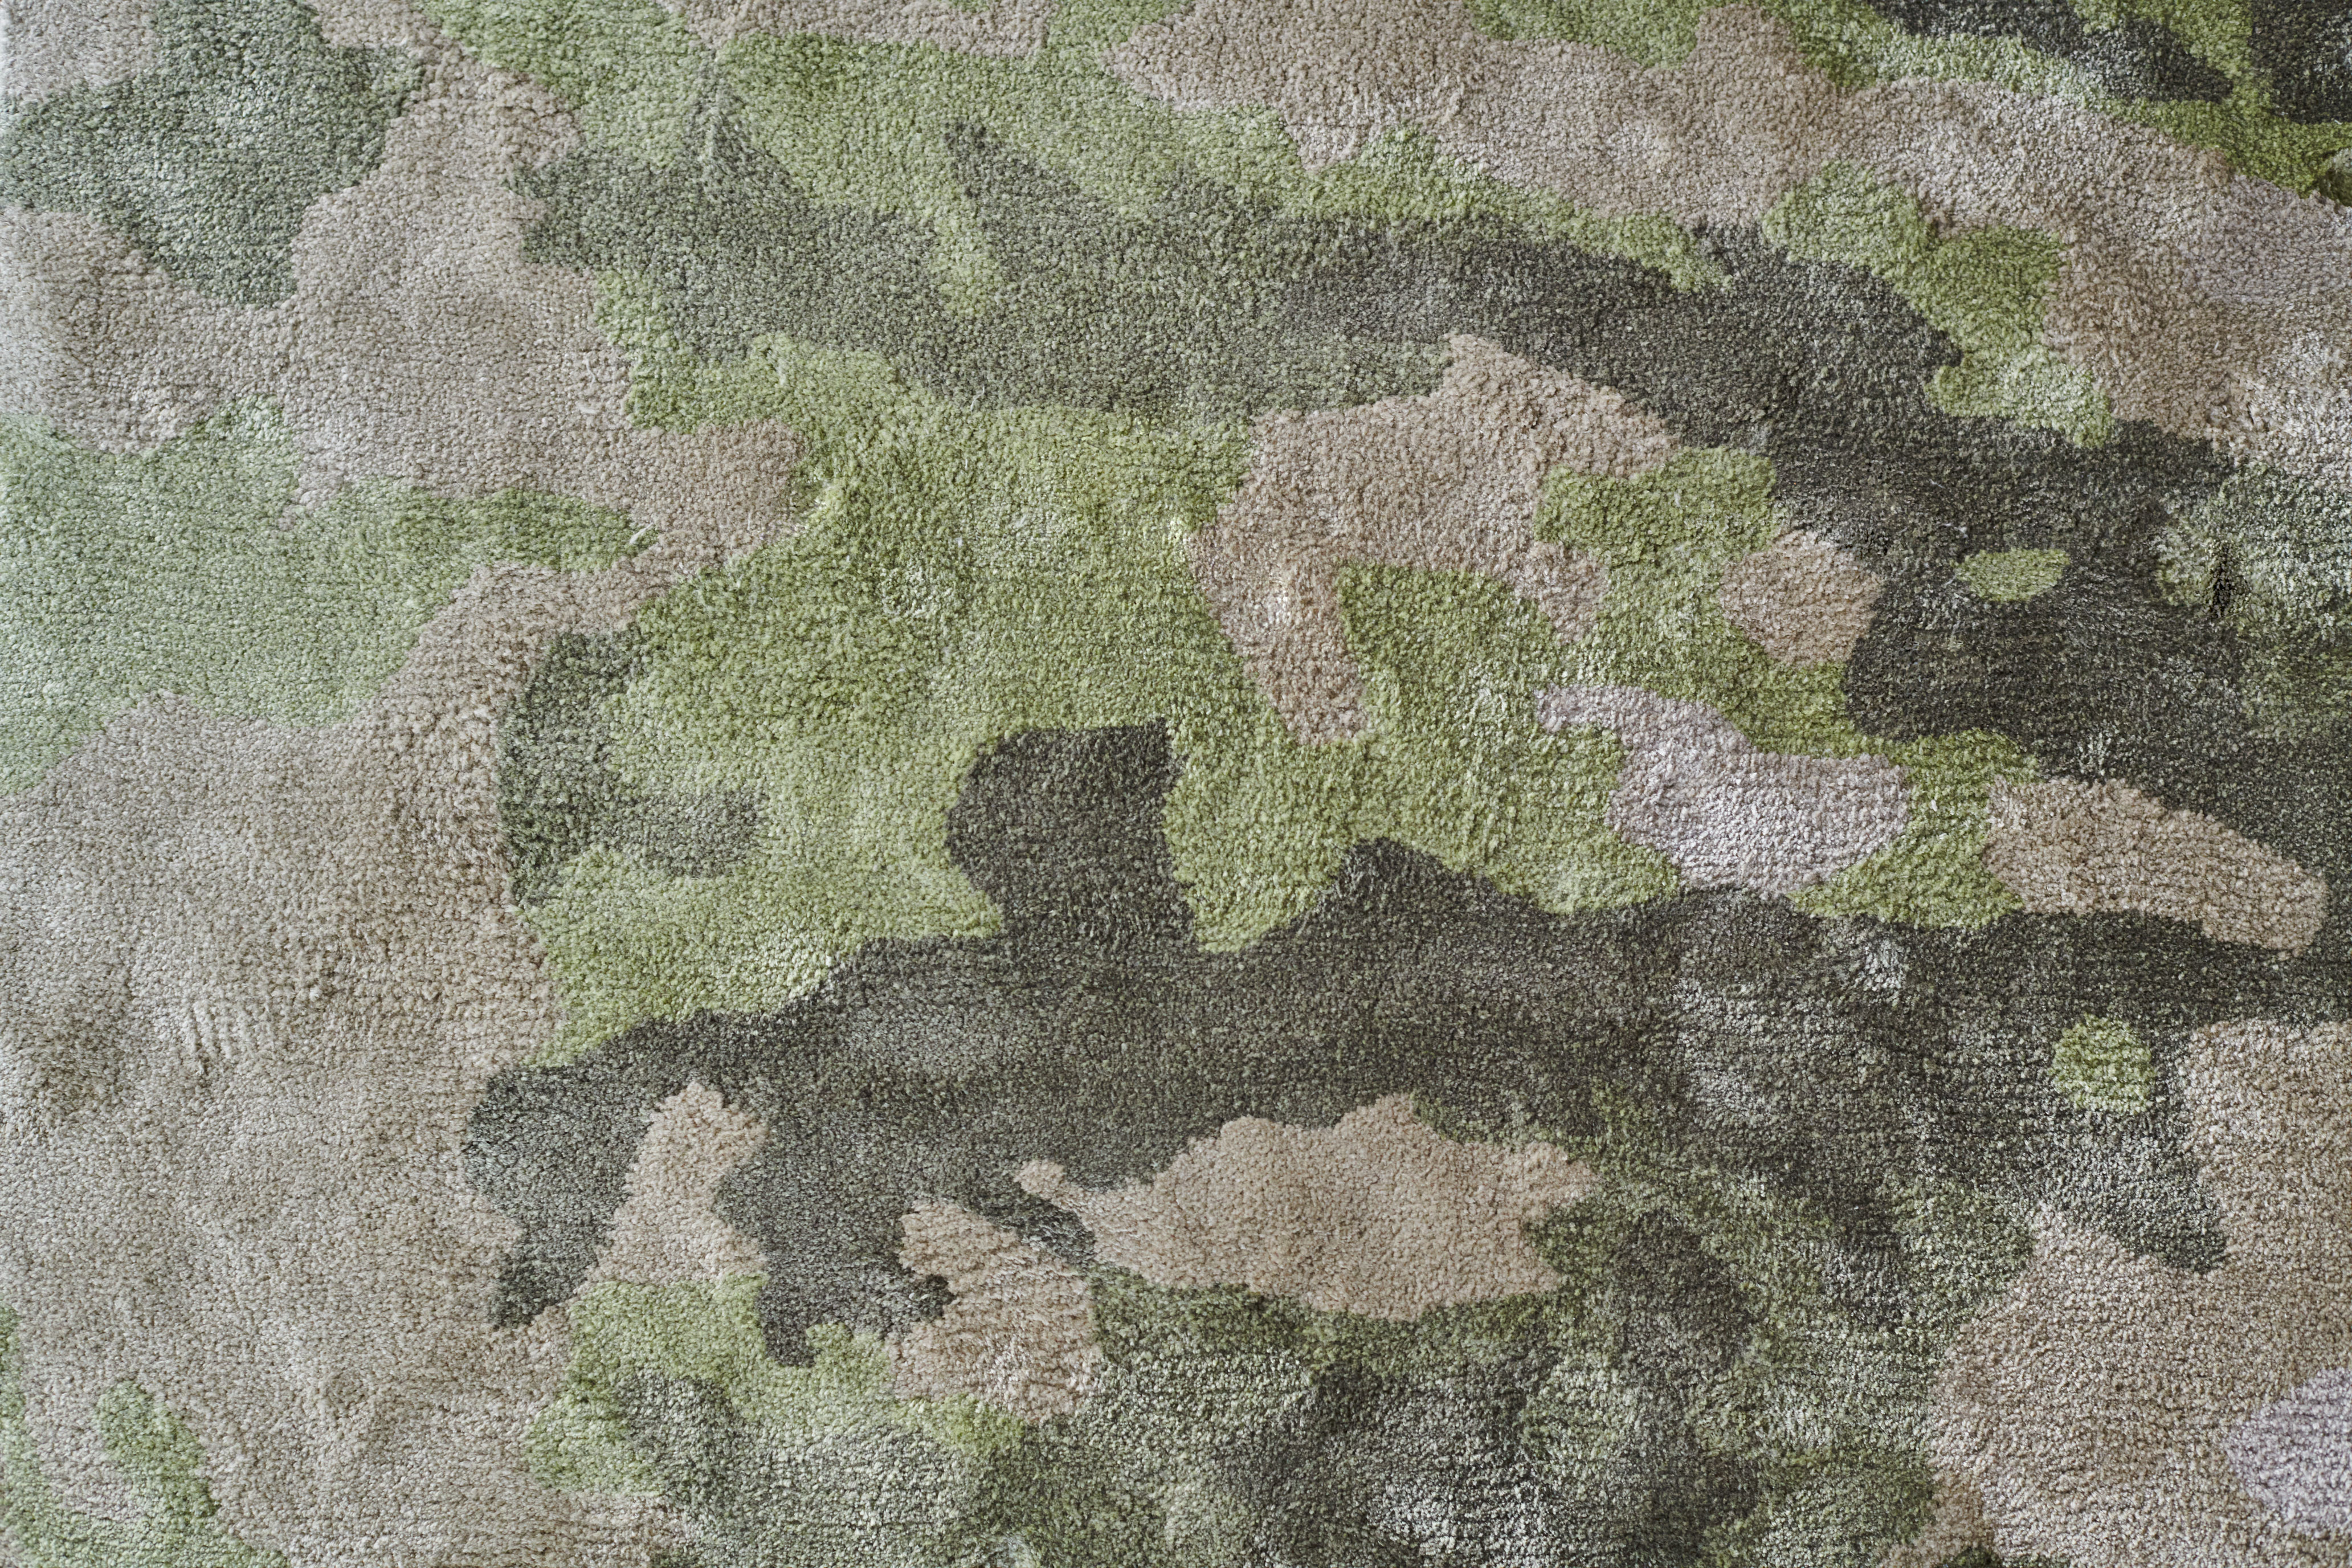 Ferreira de sa rug camouflage army green